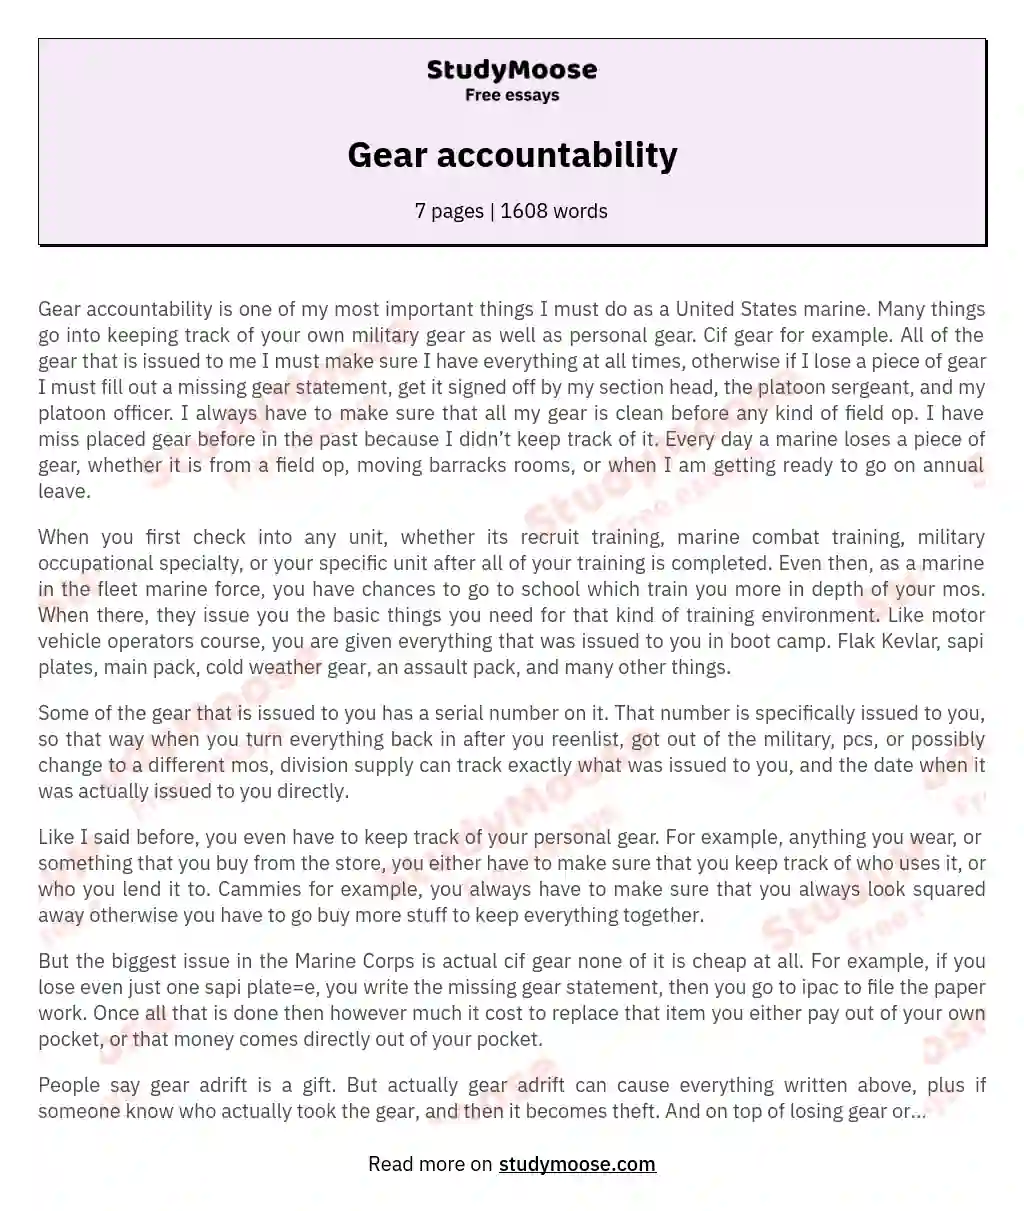 Gear accountability essay